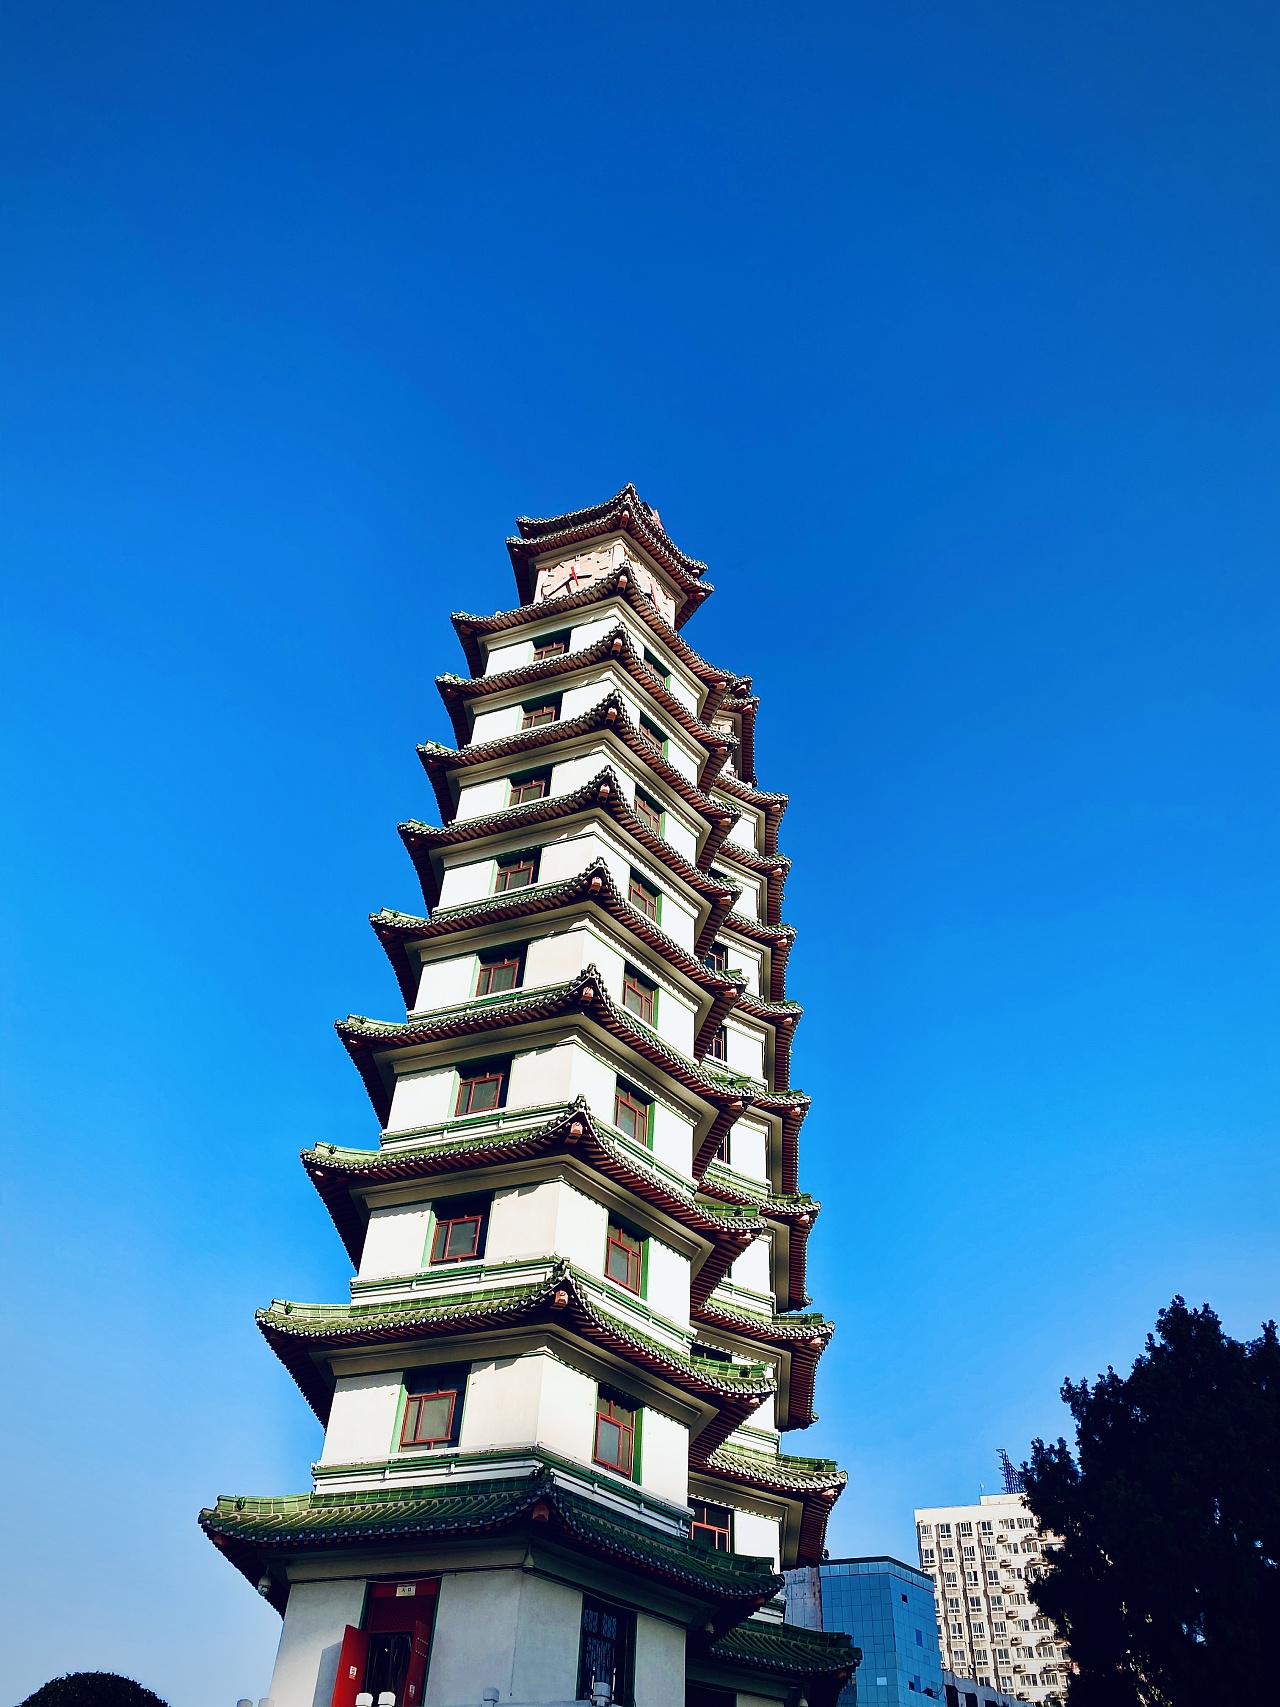 【携程攻略】景点,北京观光塔最高处为246.8米，为国内第6高。该观光塔位于奥林匹克森林…